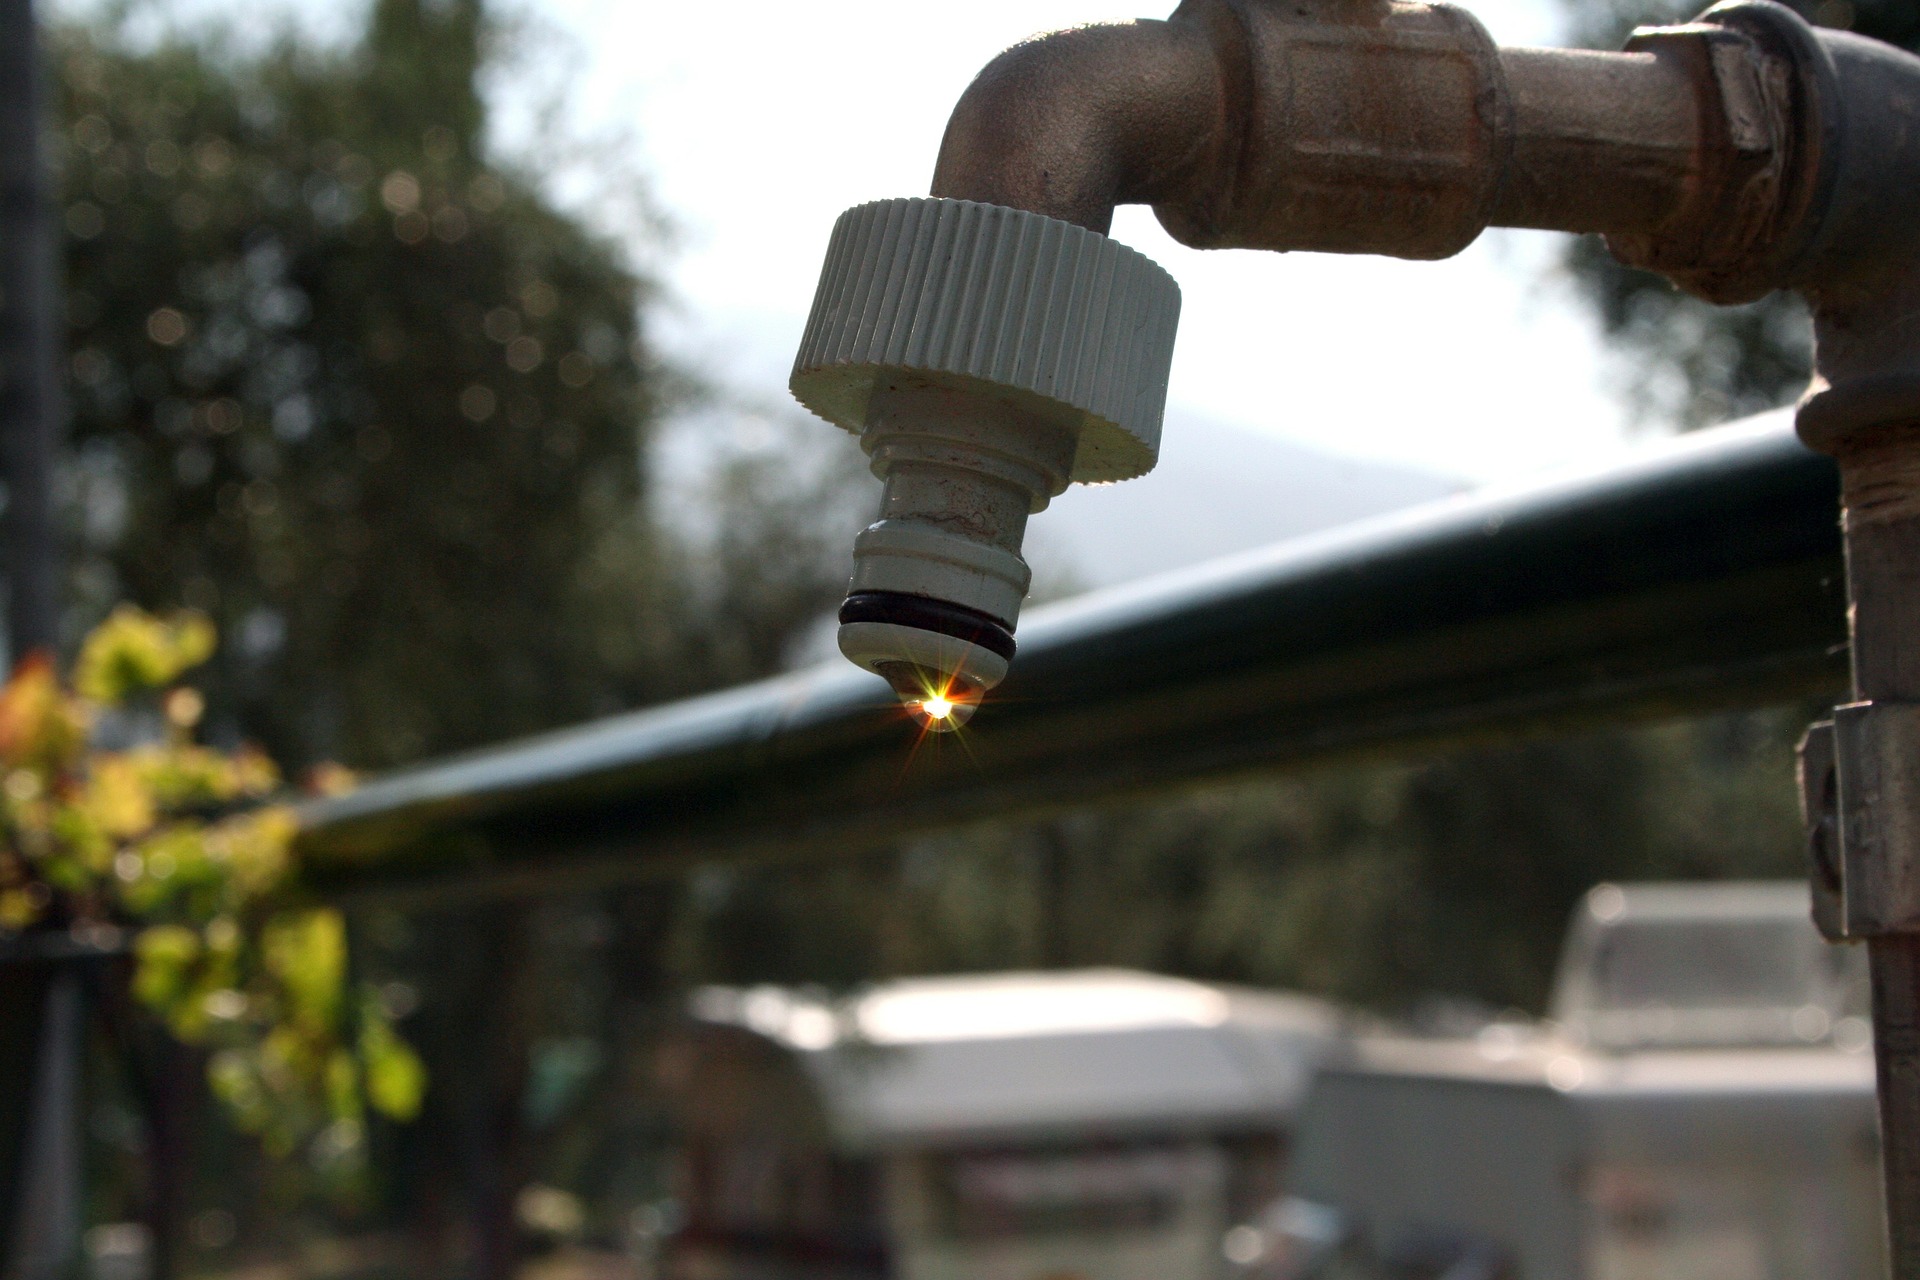 Awaria sieci przyczyną braku dostaw wody w Rozwadowie